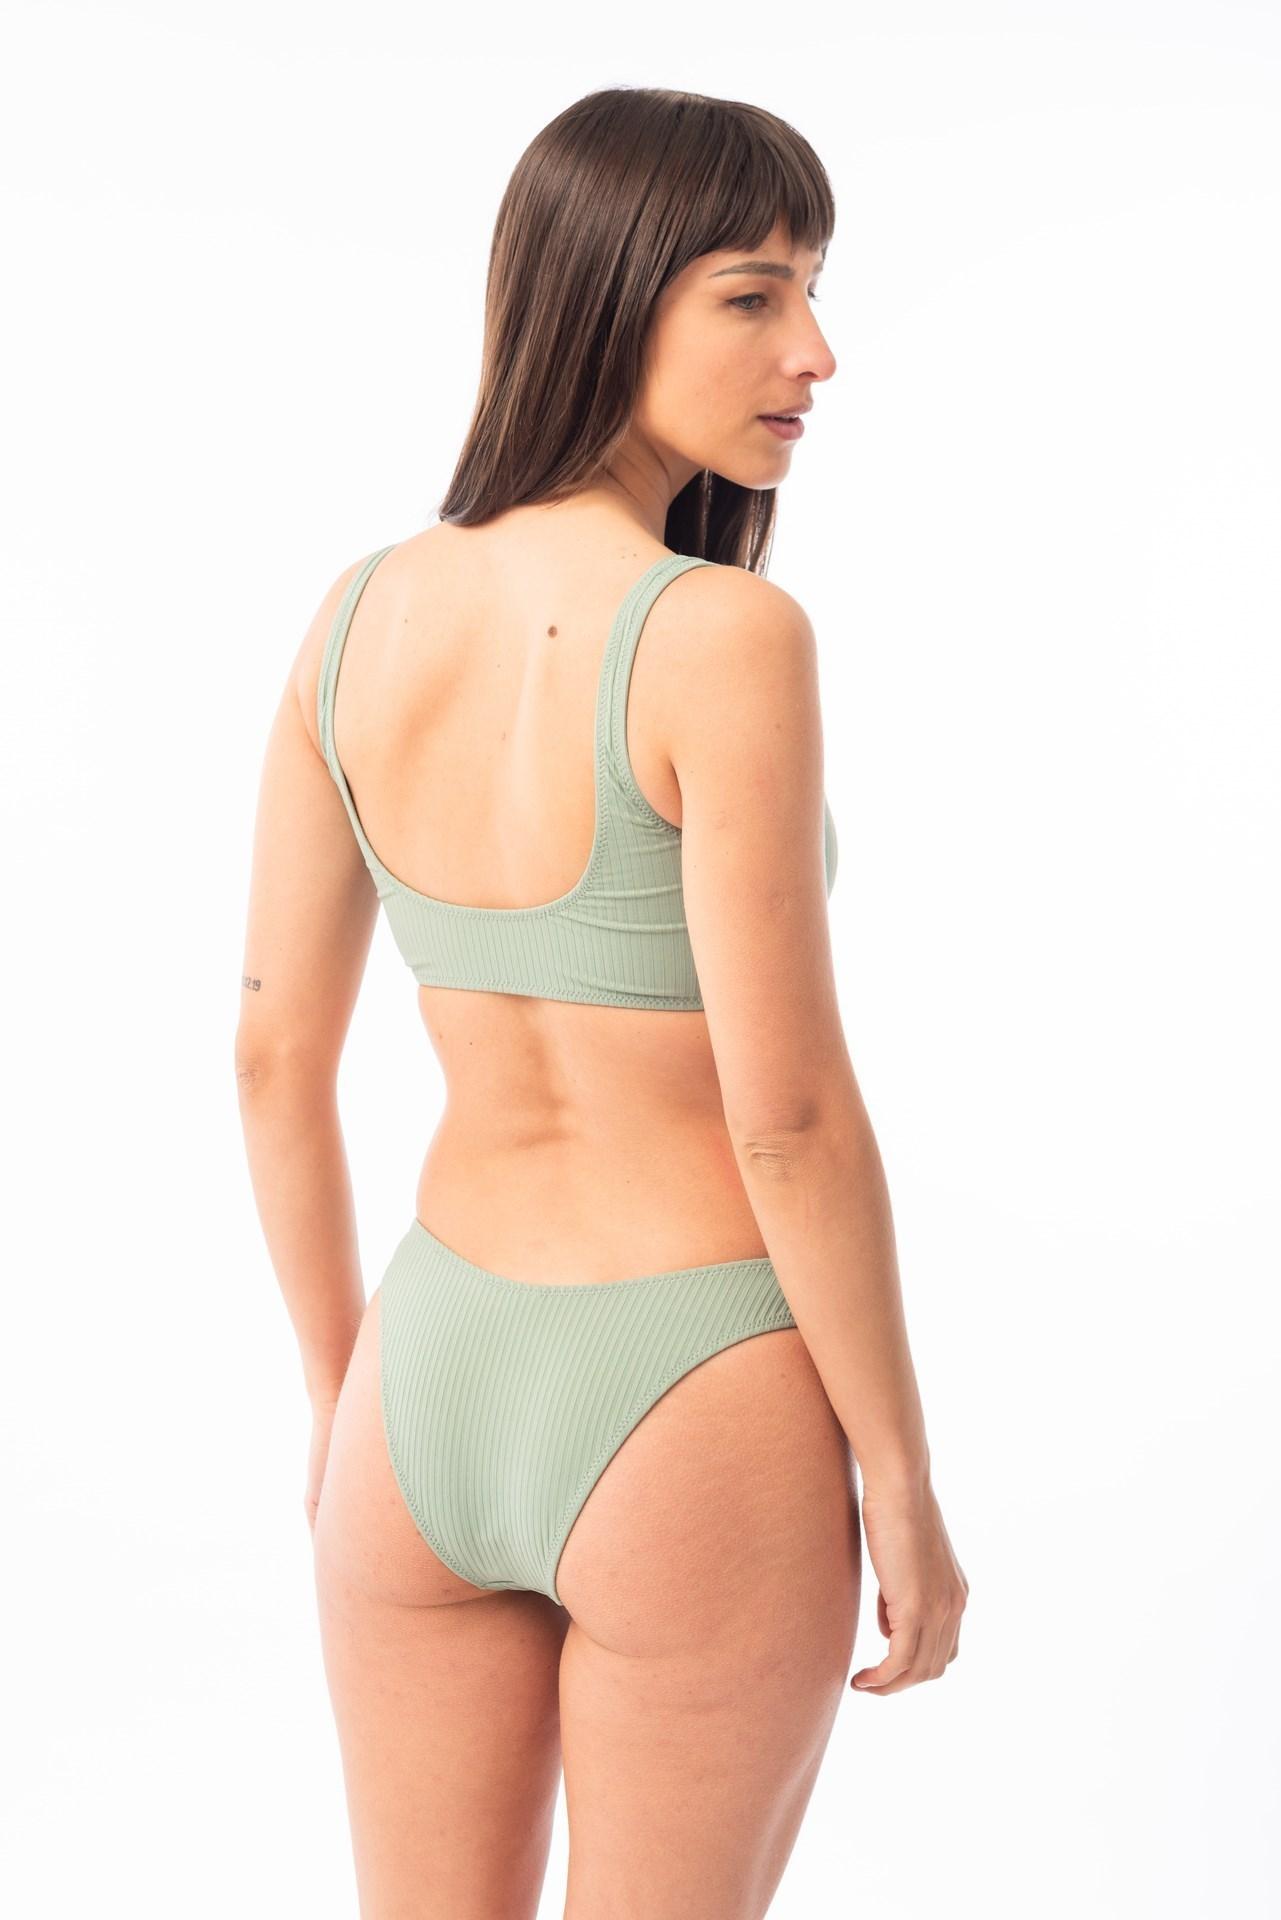 Paraiso- Bikini Top con Argollas verde agua s